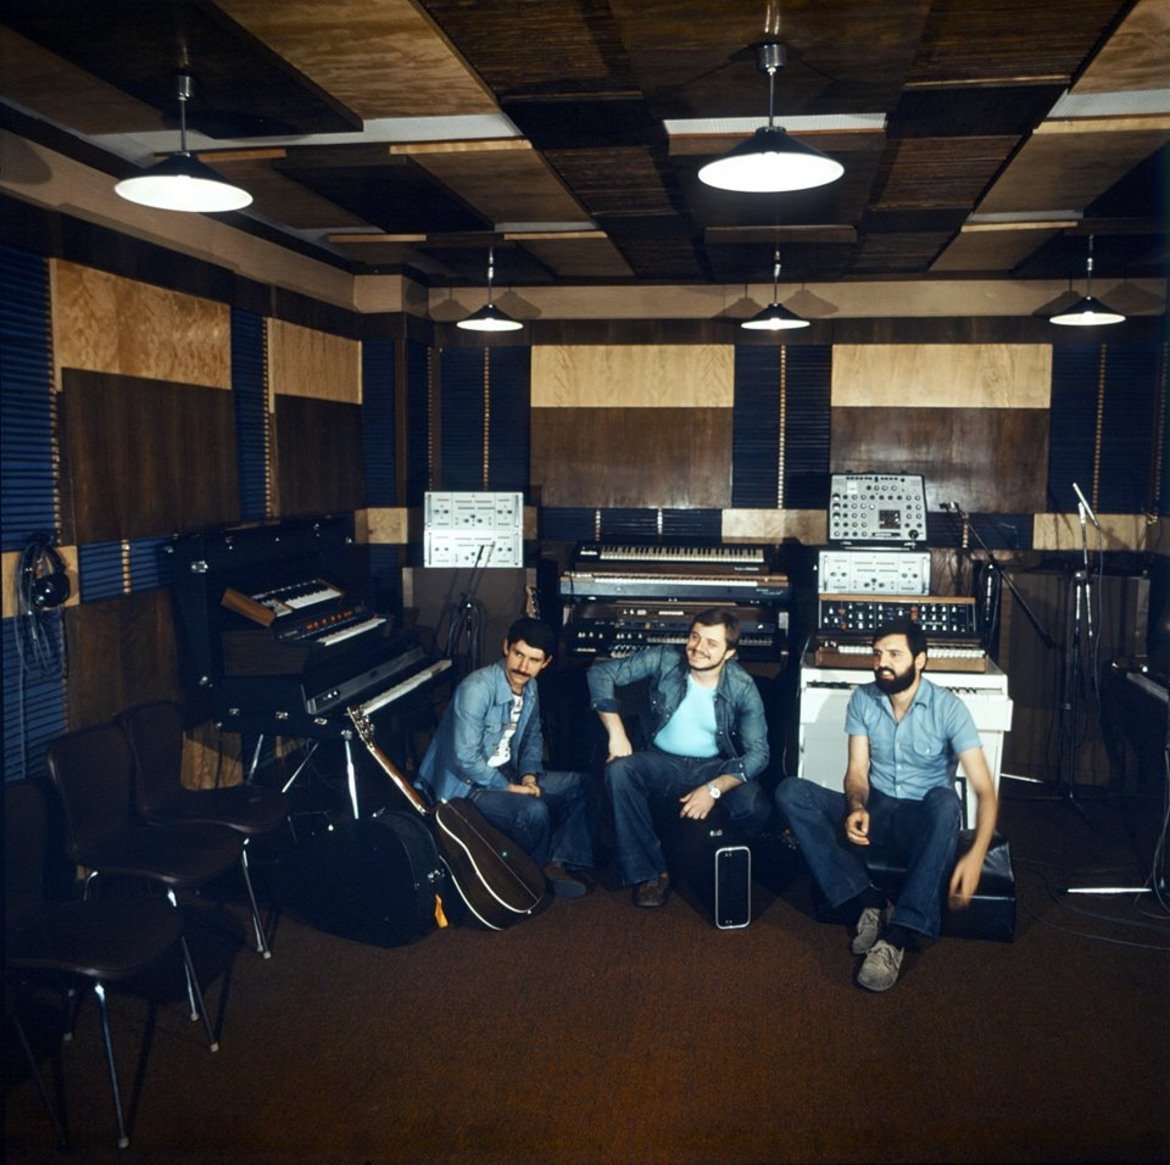 Група ФСБ през 1976 г., по време на записи в студиото на "Балкантон".